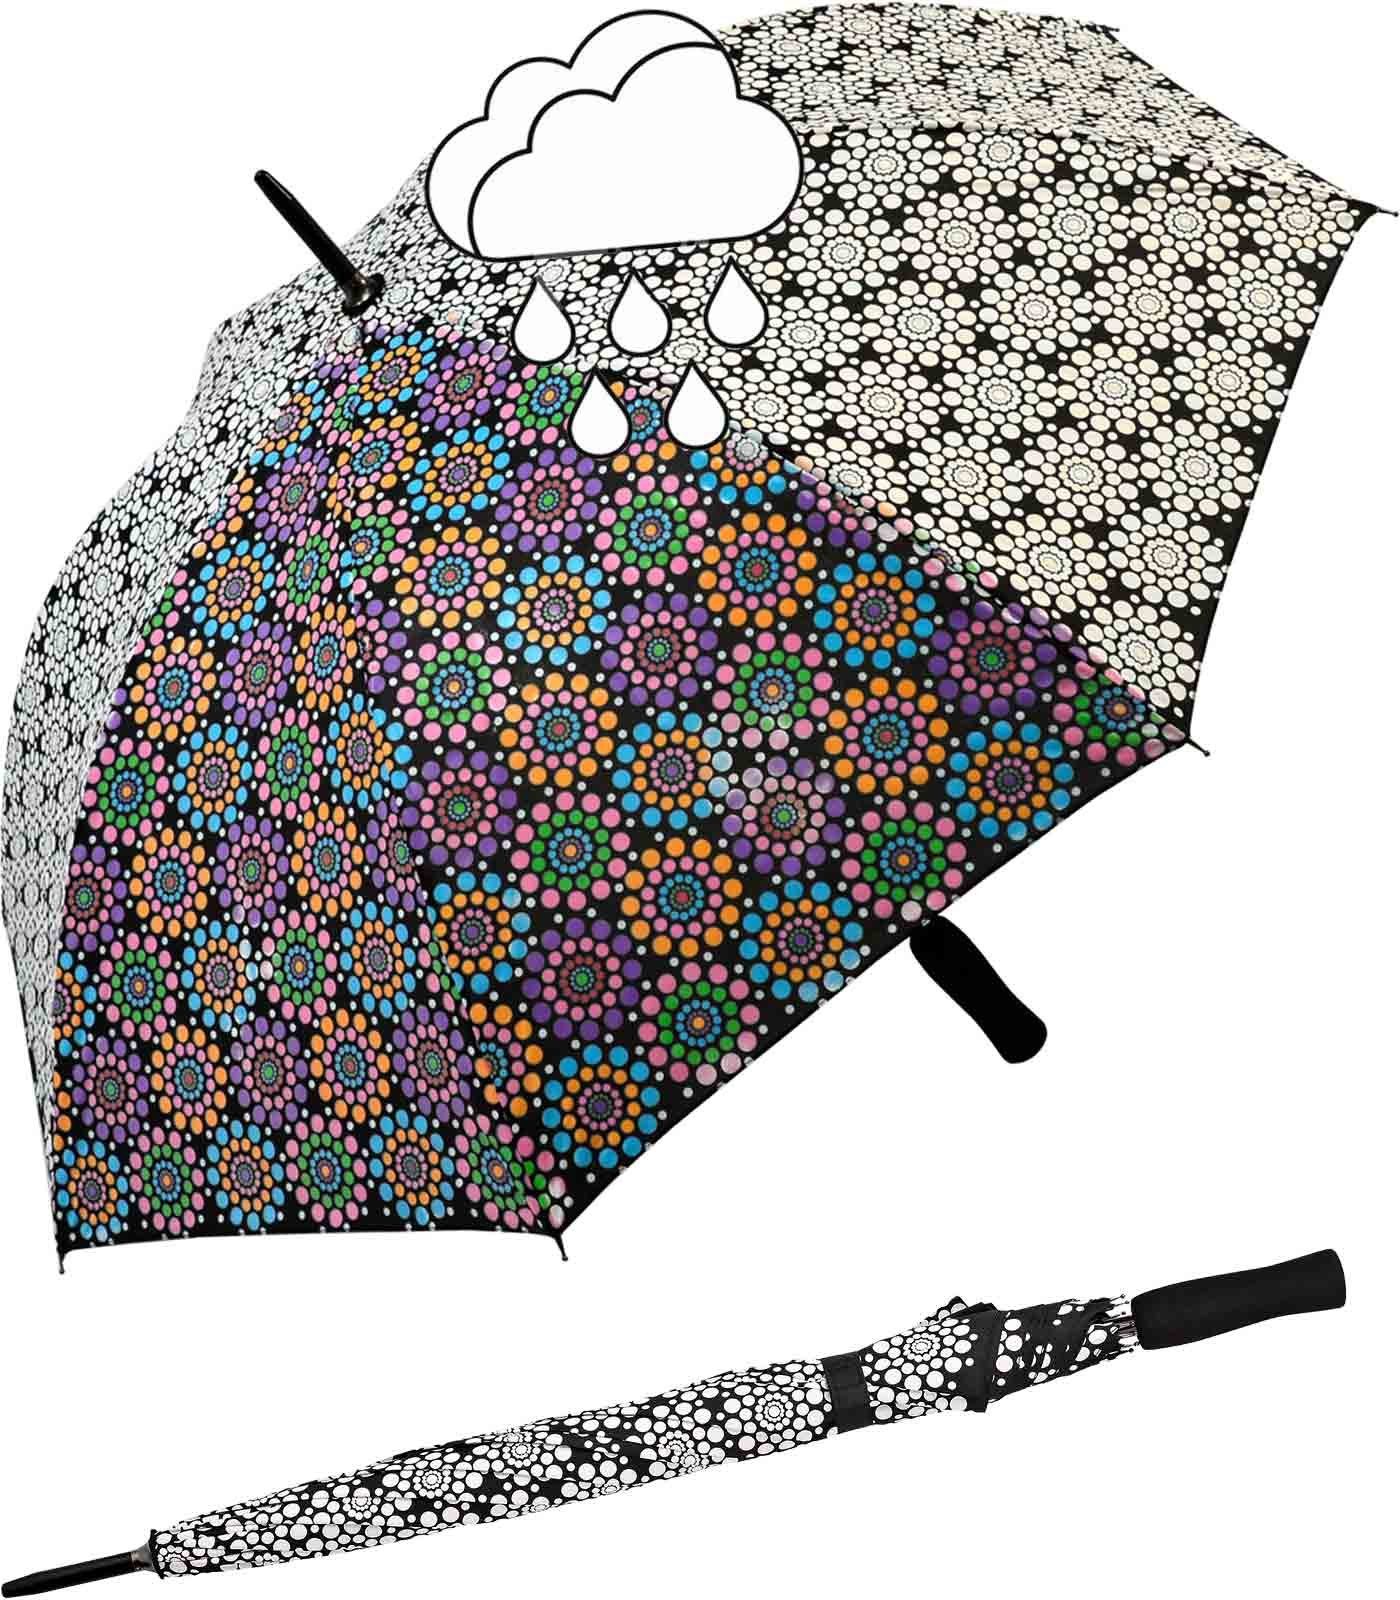 Impliva Langregenschirm Wetprint Farbwechsel bei wird Nässe - sein wenn Schirm wahres Gesicht nass er der zeigt Blumen